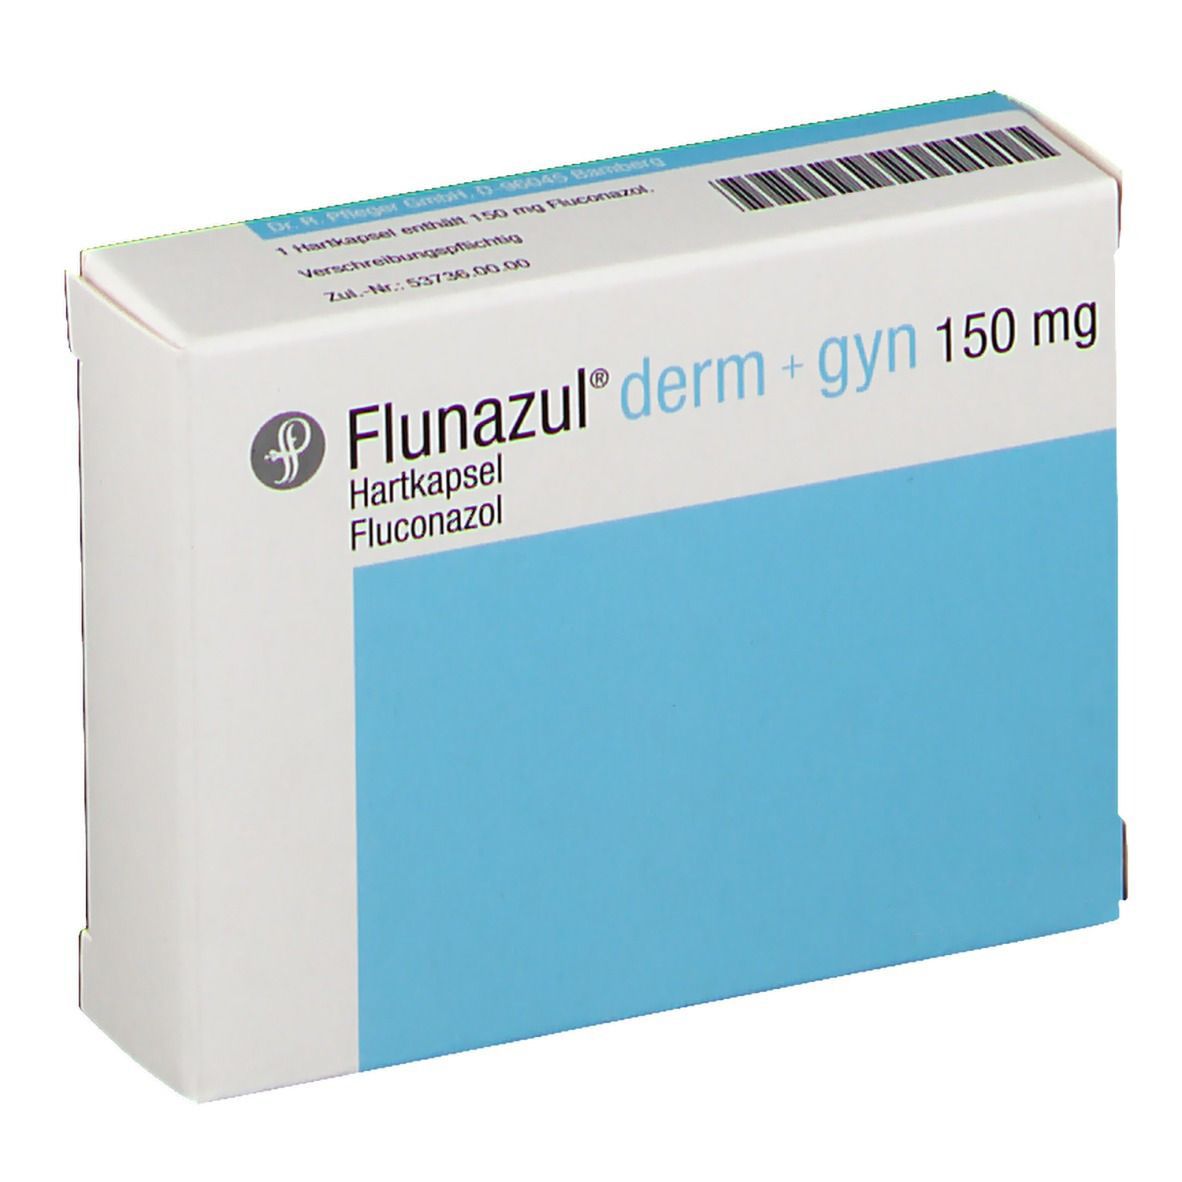 Flunazul® derm + gyn 150 mg